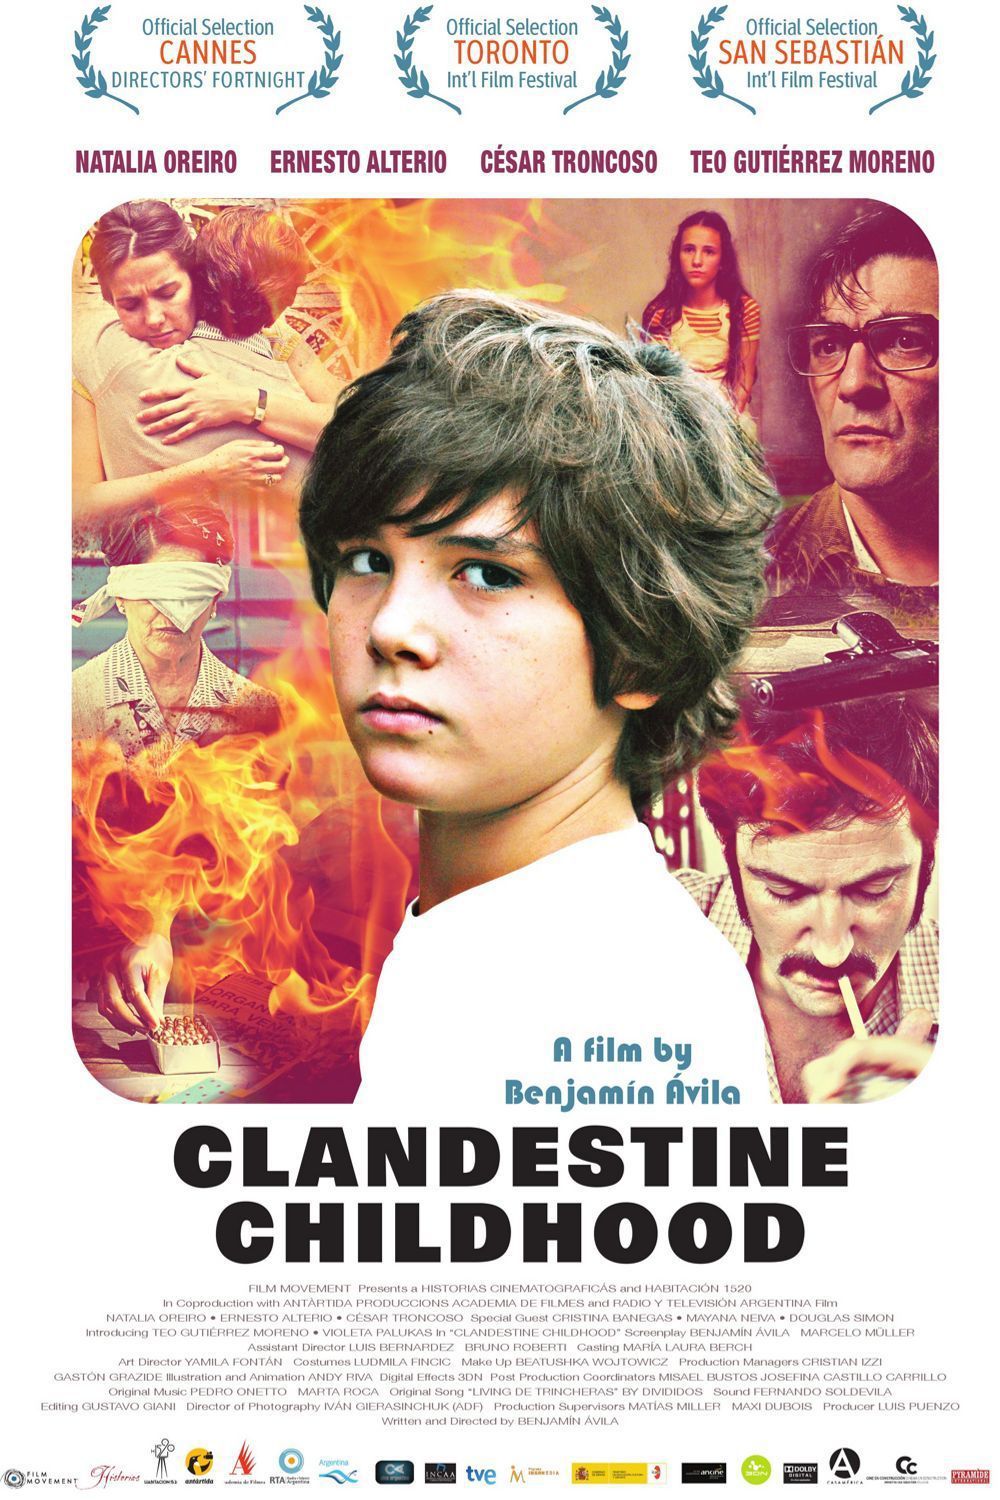 Enfance clandestine - Film (2013) streaming VF gratuit complet